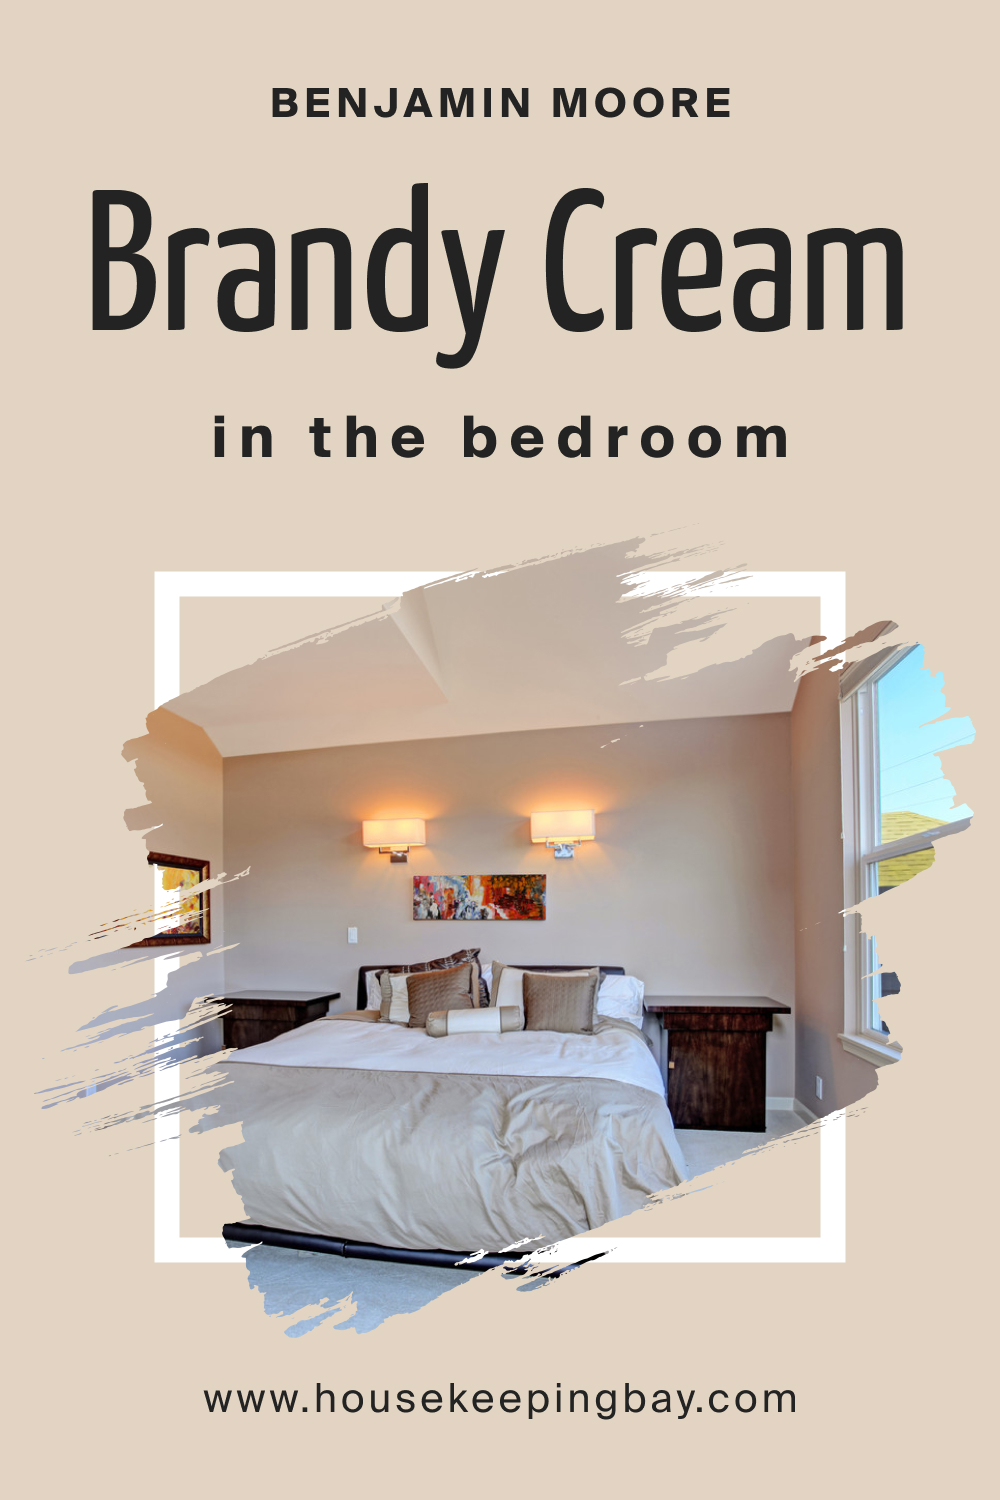 Benjamin Moore. Brandy Cream OC 4 for the Bedroom